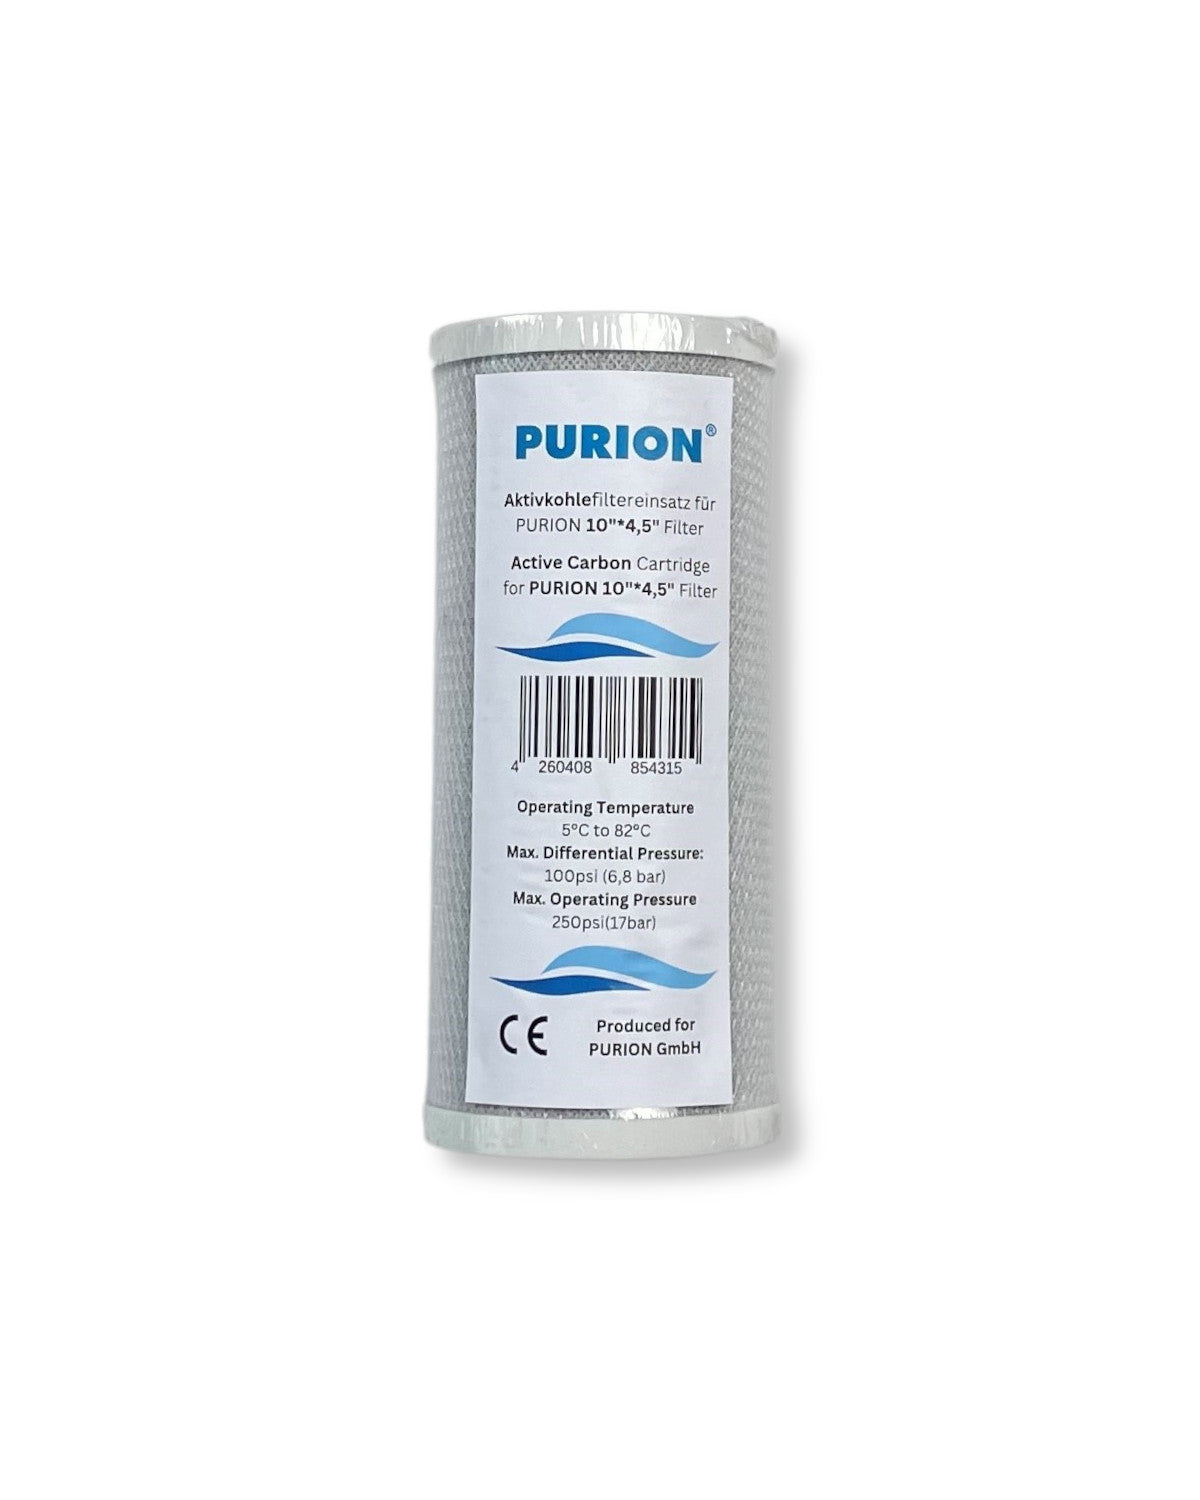 PURION 2500 90 W Starter-Wasserfilterkartusche der Purion GmbH für UV-Anlage und Desinfektion von Wasser. Diese Kartusche erfüllt hohe Qualitätsstandards bei der Wasseraufbereitung für das Purion-System.